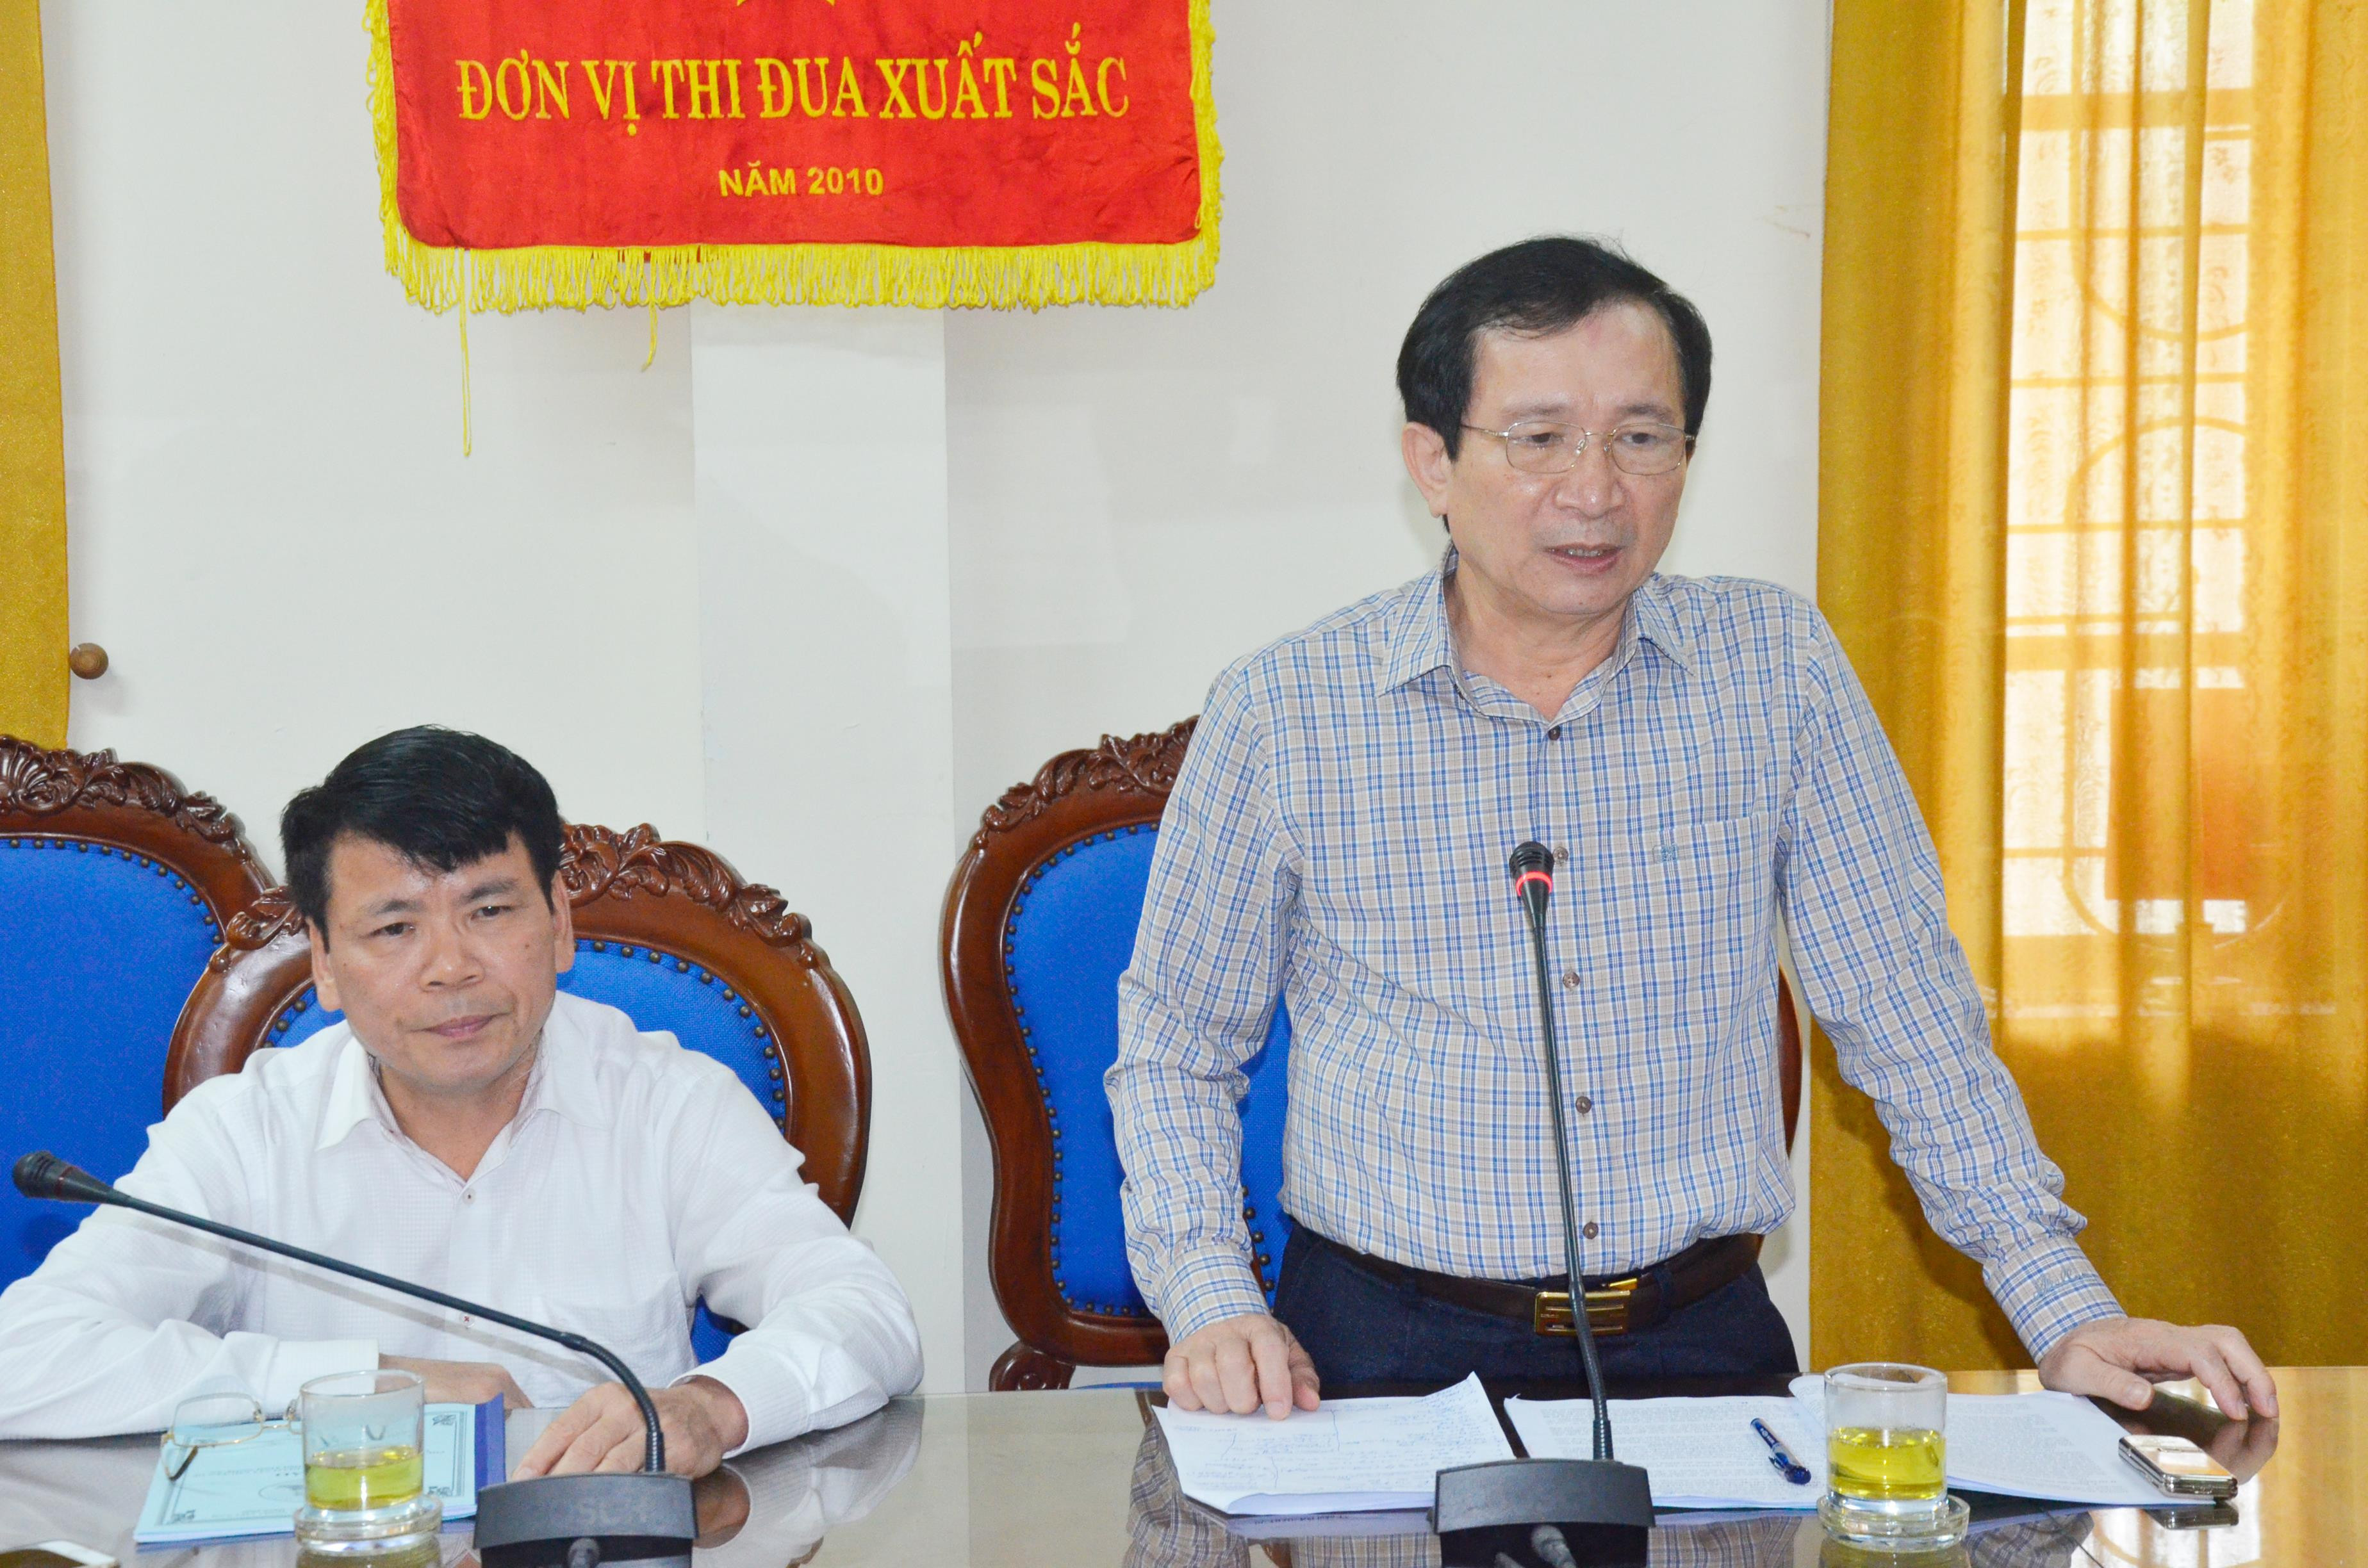 Phó Chủ tịch UBND tỉnh Đinh Viết Hồng cho rằng bảo vệ phát triển rừng theo hướng nâng cao chất lượng rừng, theo hướng phát triển hệ sinh thái, xuất khẩu các sản phẩm từ chế biến gỗ. Ảnh: Thanh Lê